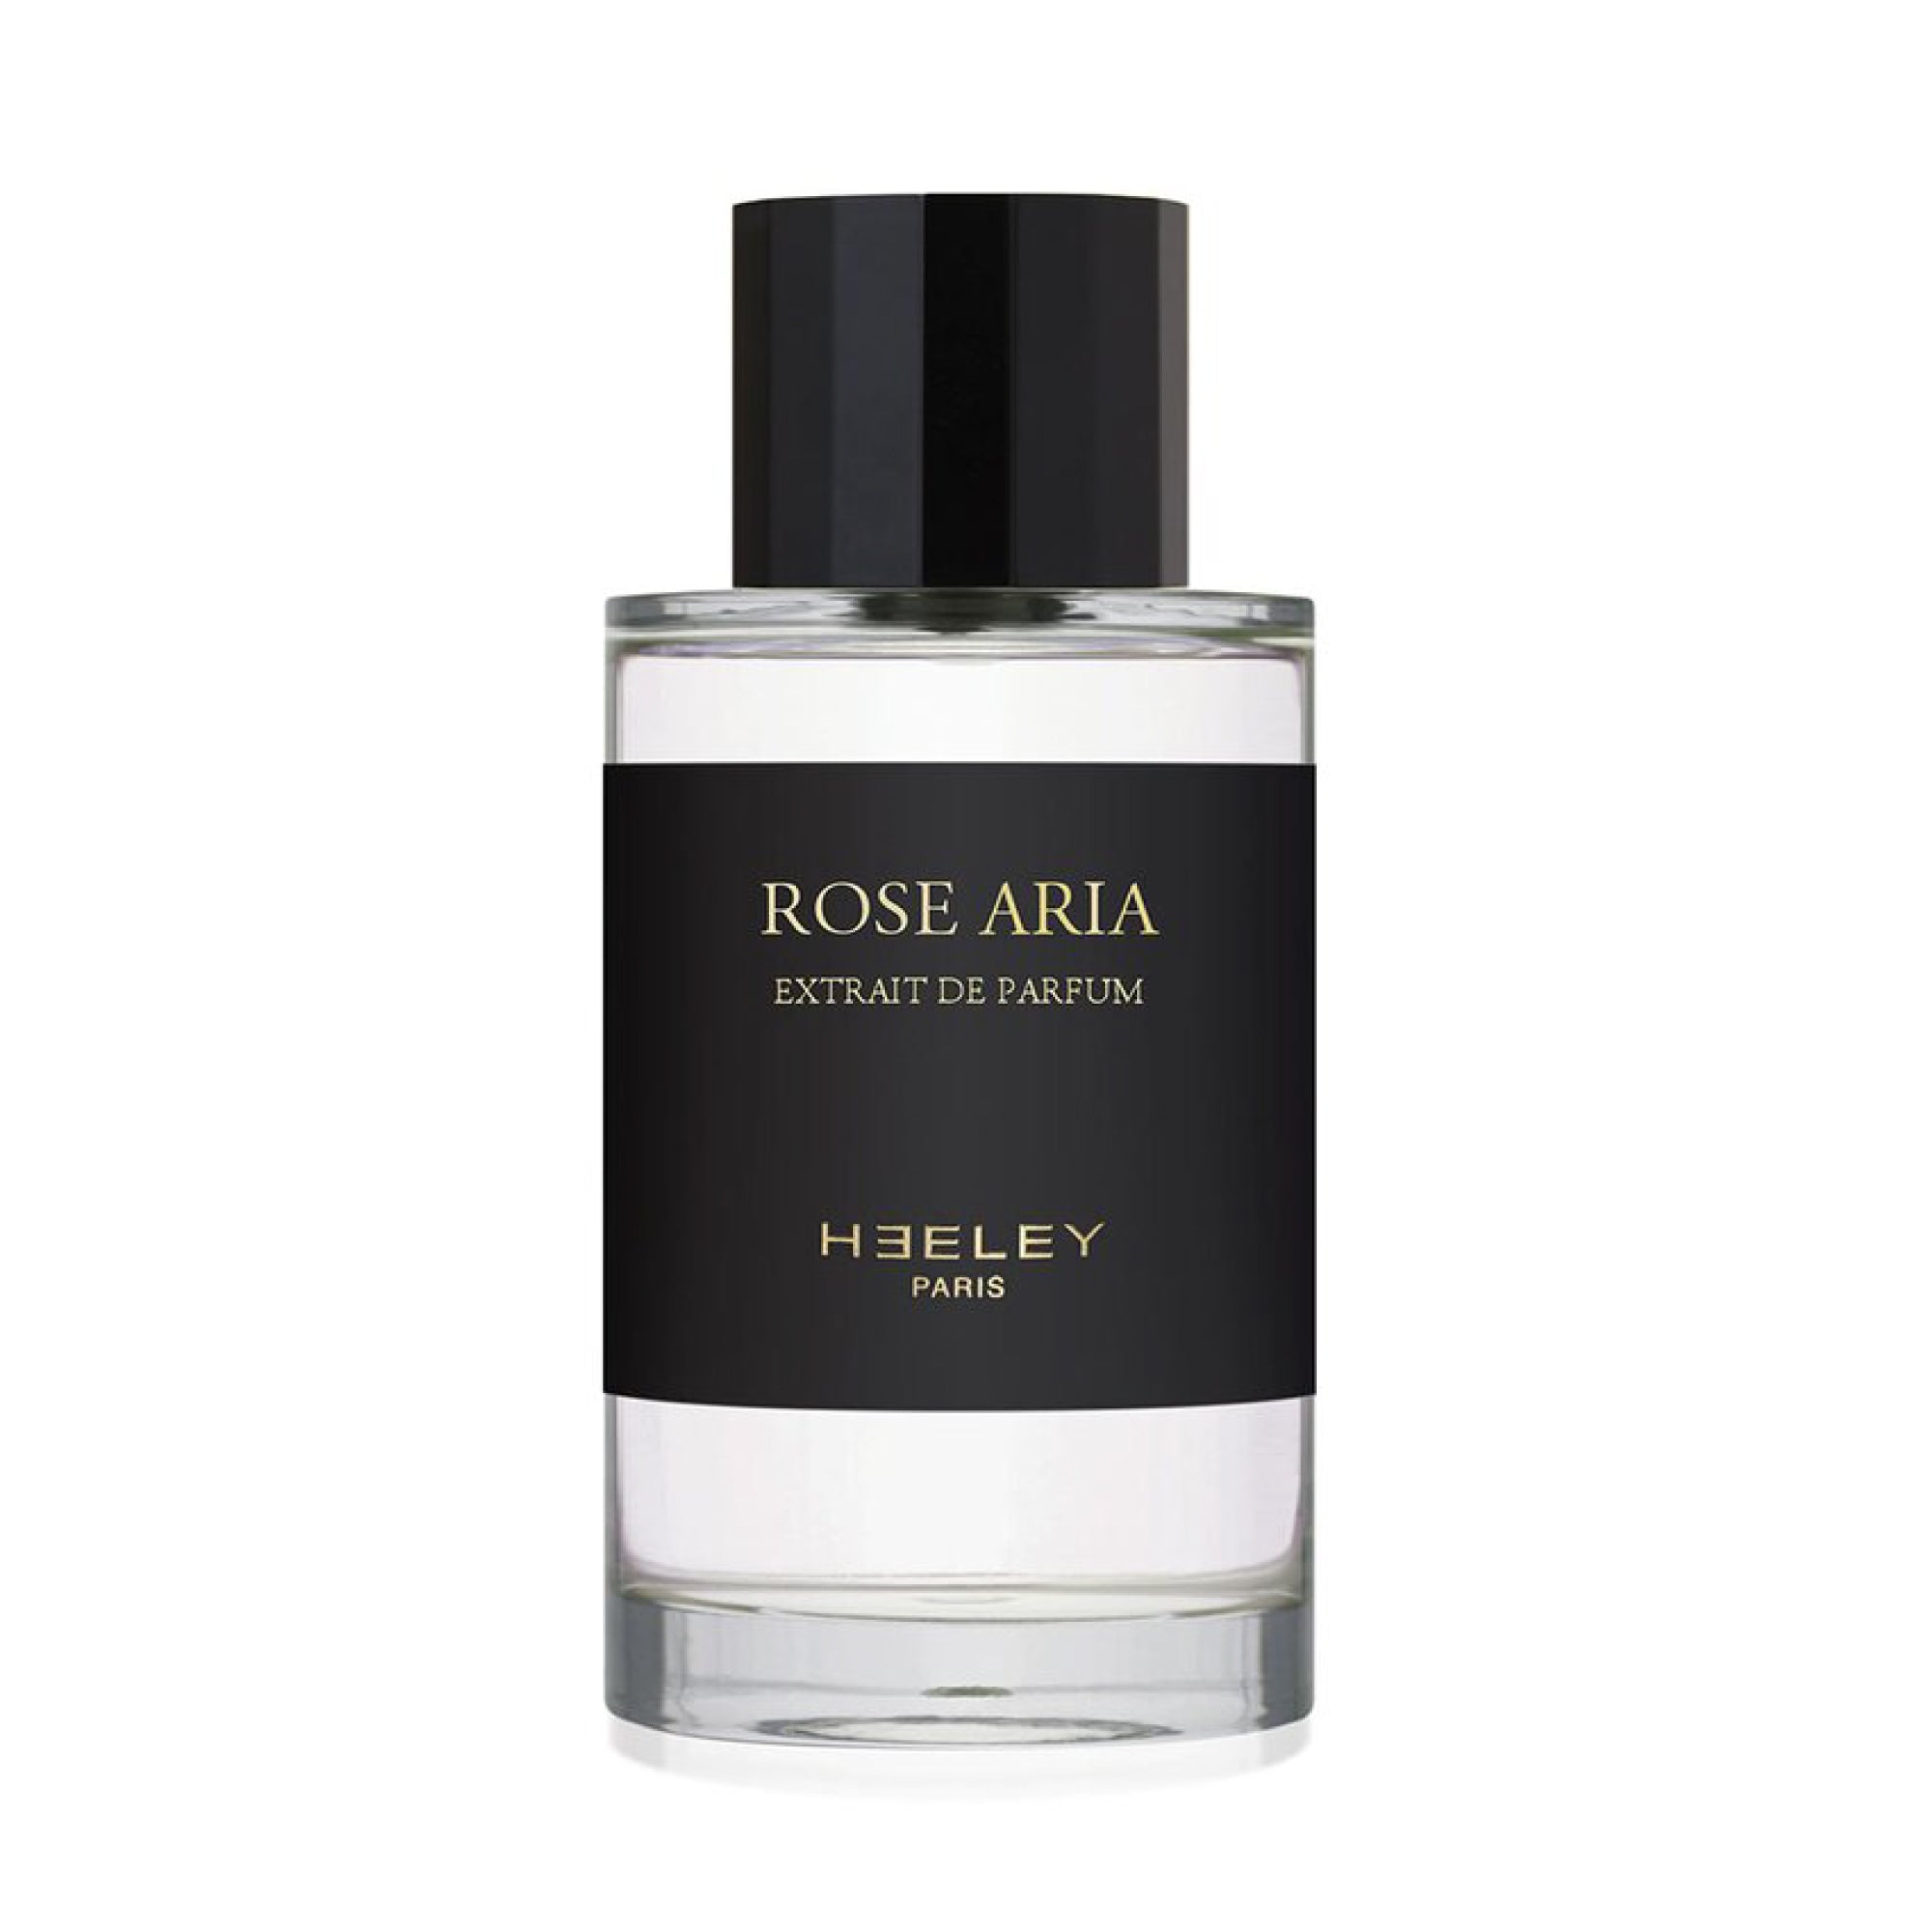 ROSE ARIA Extrait de Parfum 100ml